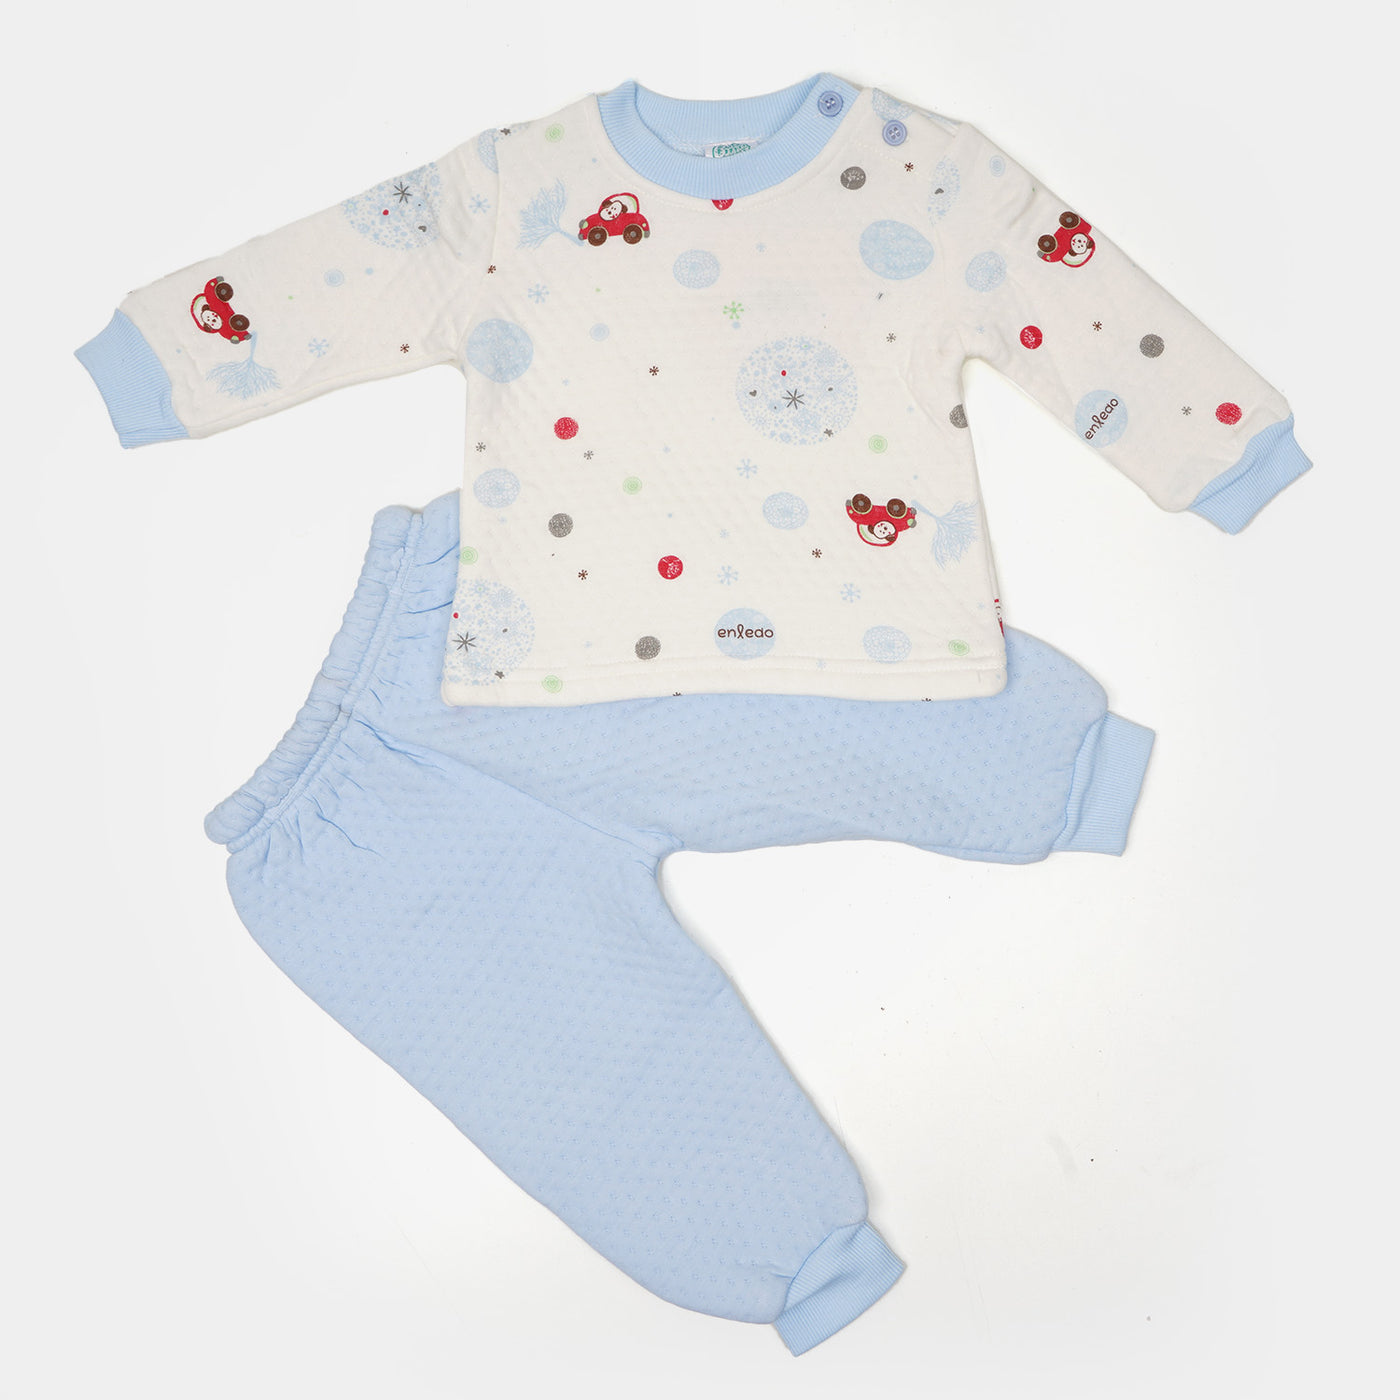 Unisex Winter Infant 2 PCs Suit